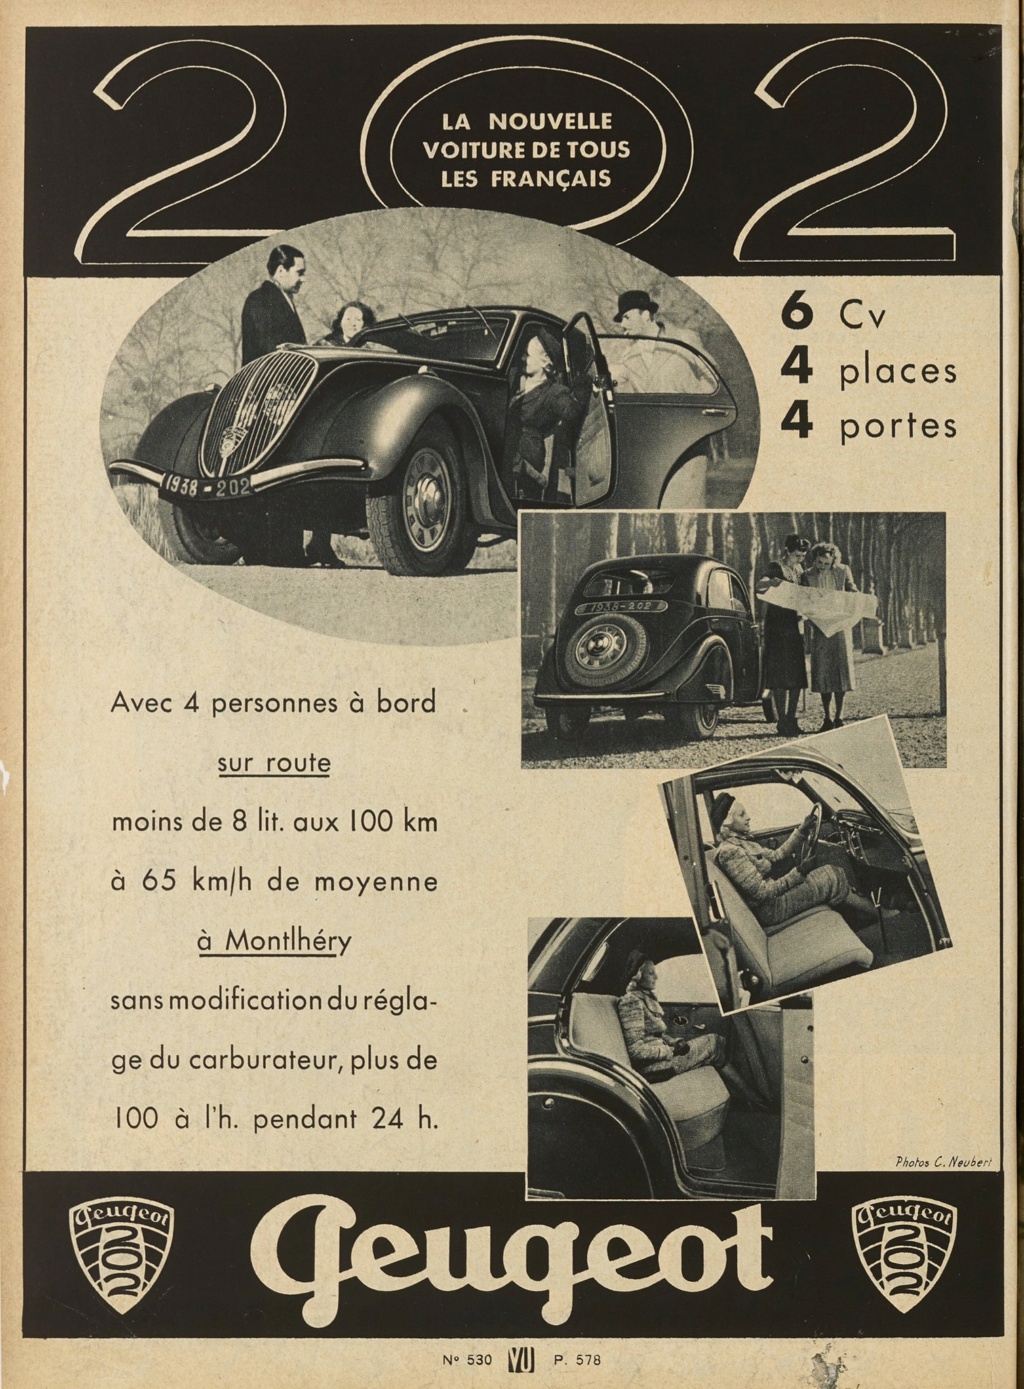 Peugeot publicité ad 37677410